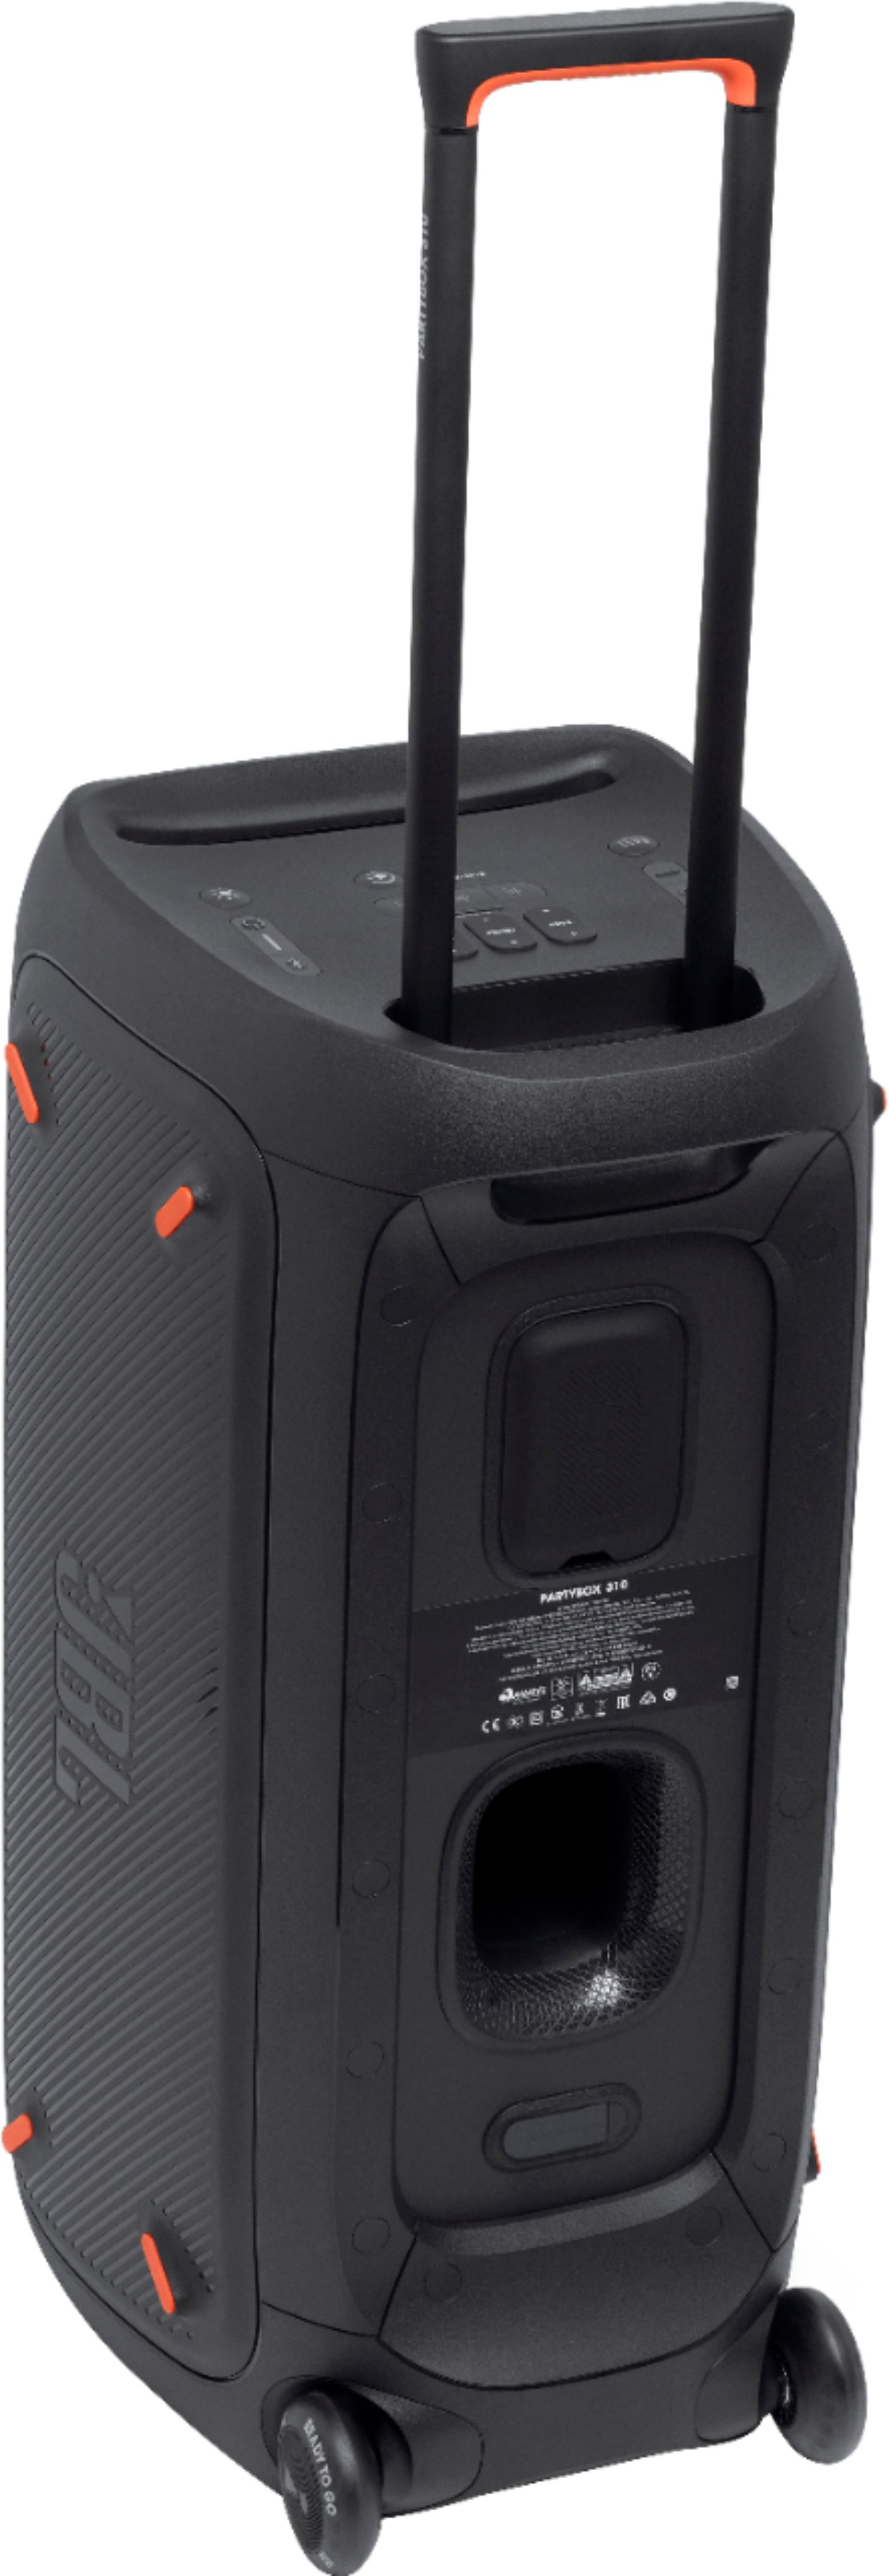 JBL PartyBox 310 Portable Party Speaker Black JBLPARTYBOX310AM